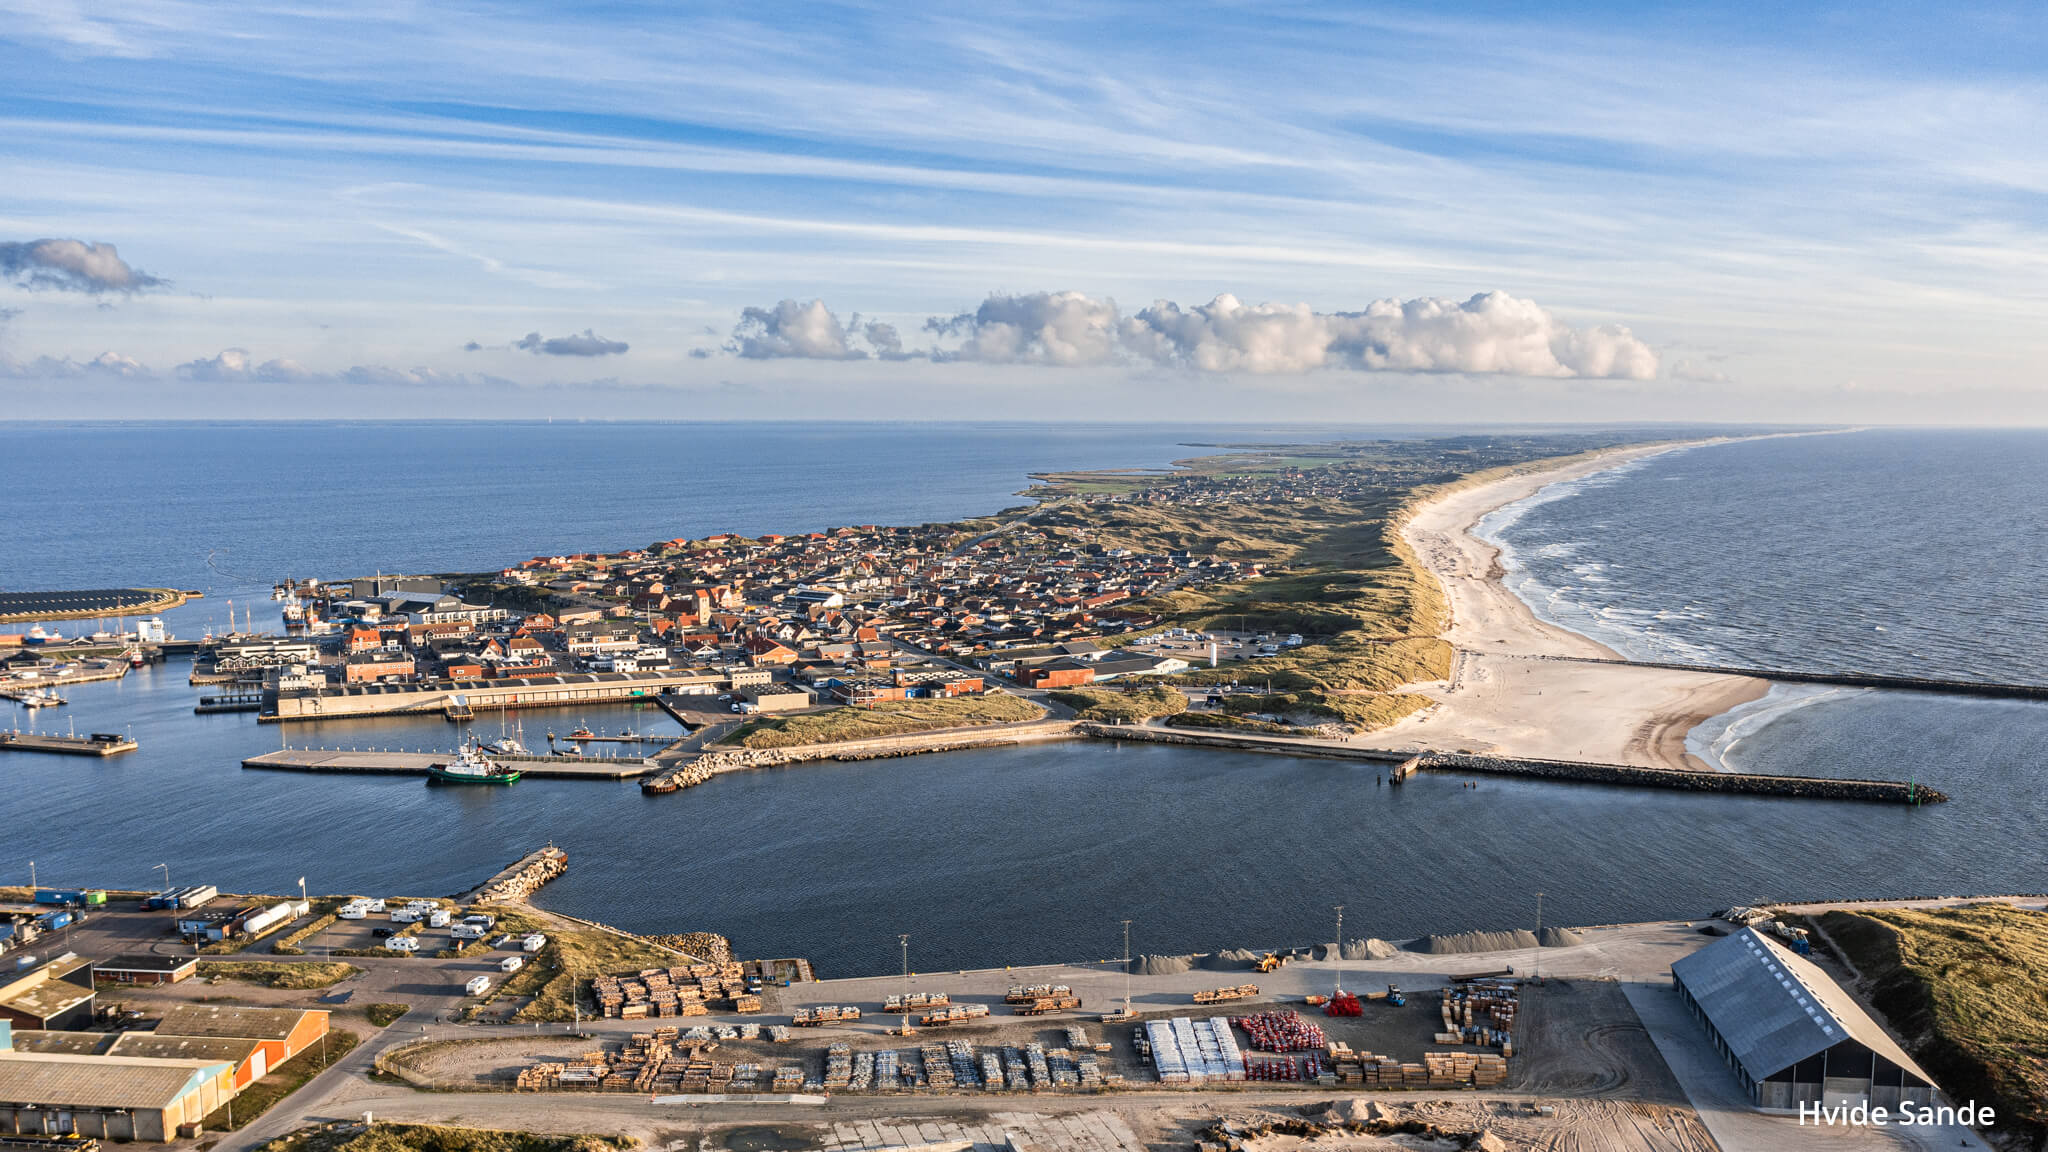 Stranddeko - Roadtrip Dänemark Kompakt 2021